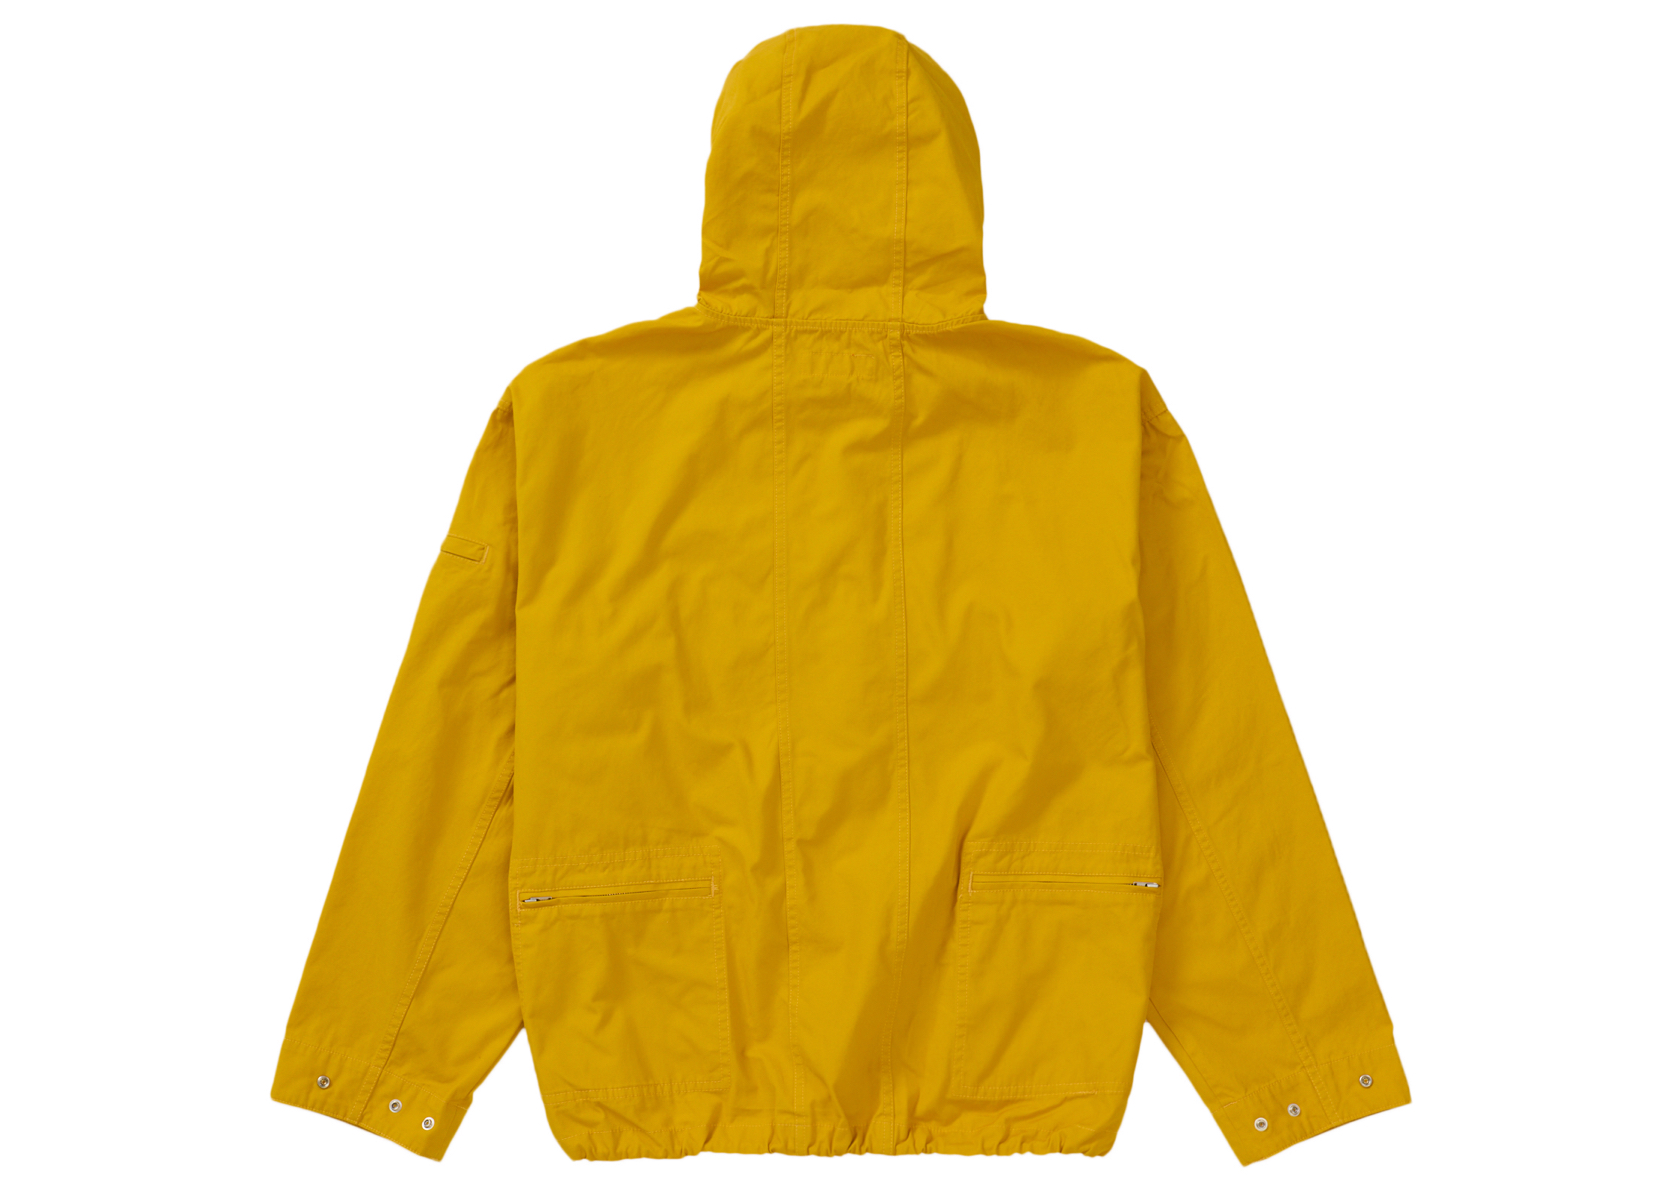 17,480円Supreme Cotton Utility Anorak yellow